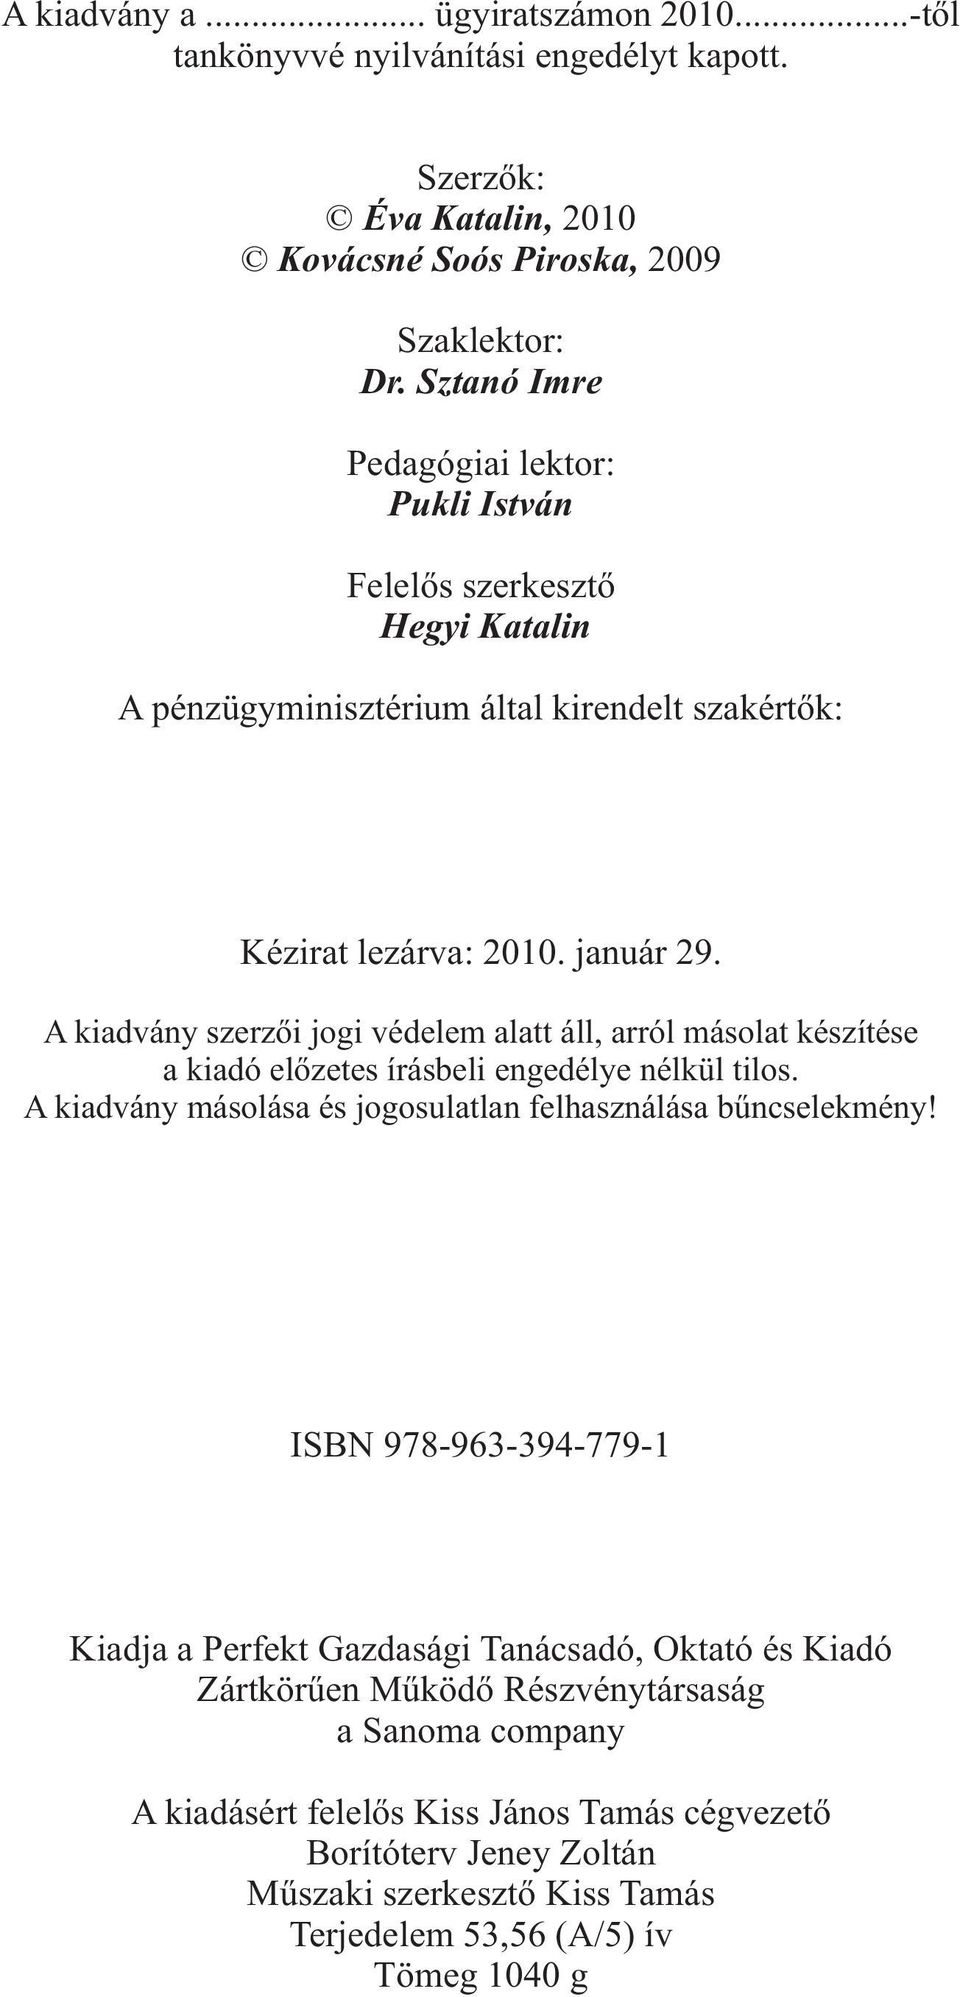 A kiadvány szerzõi jogi védelem alatt áll, arról másolat készítése a kiadó elõzetes írásbeli engedélye nélkül tilos. A kiadvány másolása és jogosulatlan felhasználása bûncselekmény!